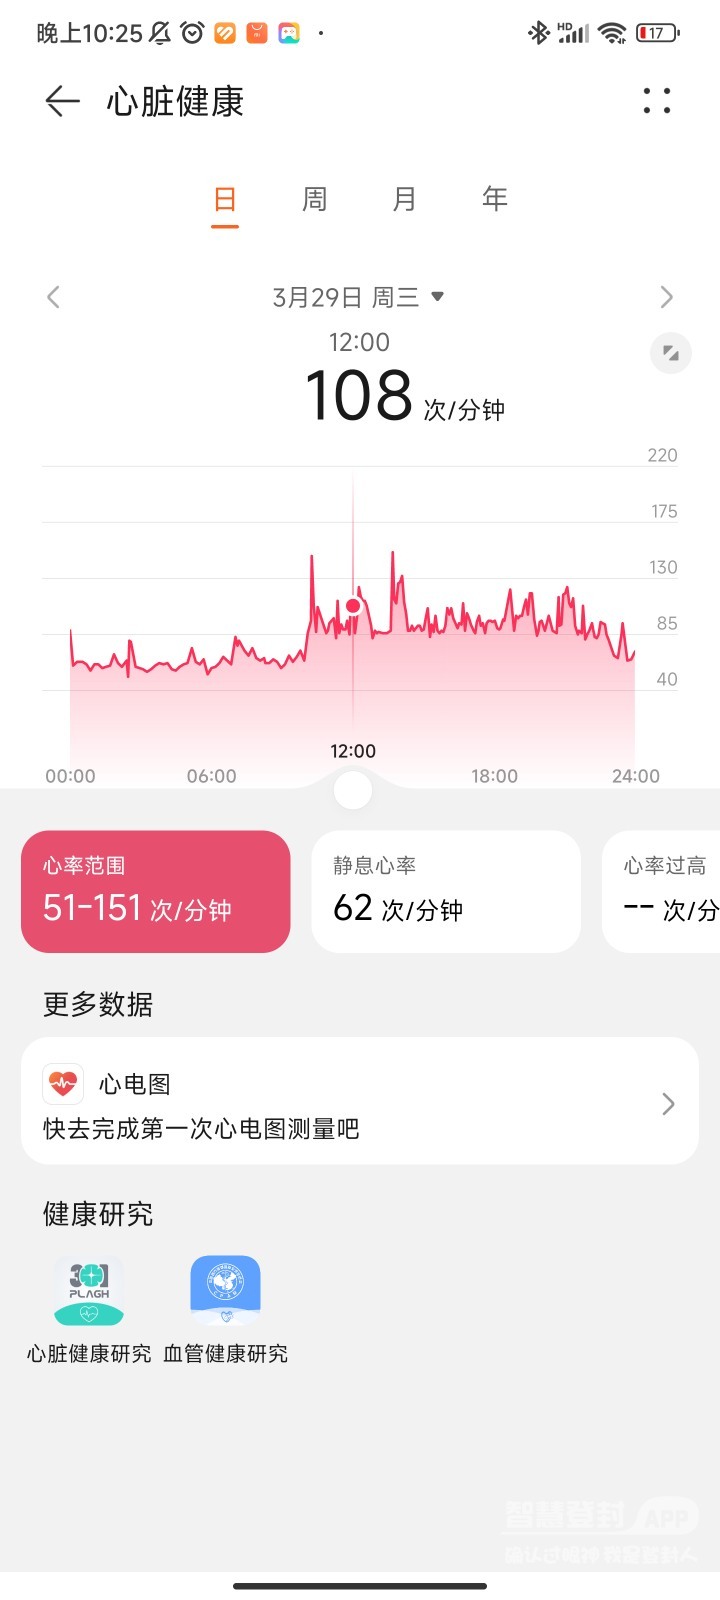 00后一个人在上海打拼好难，还得了神经官能症1271 作者:啧啧啧唉 帖子ID:357991 